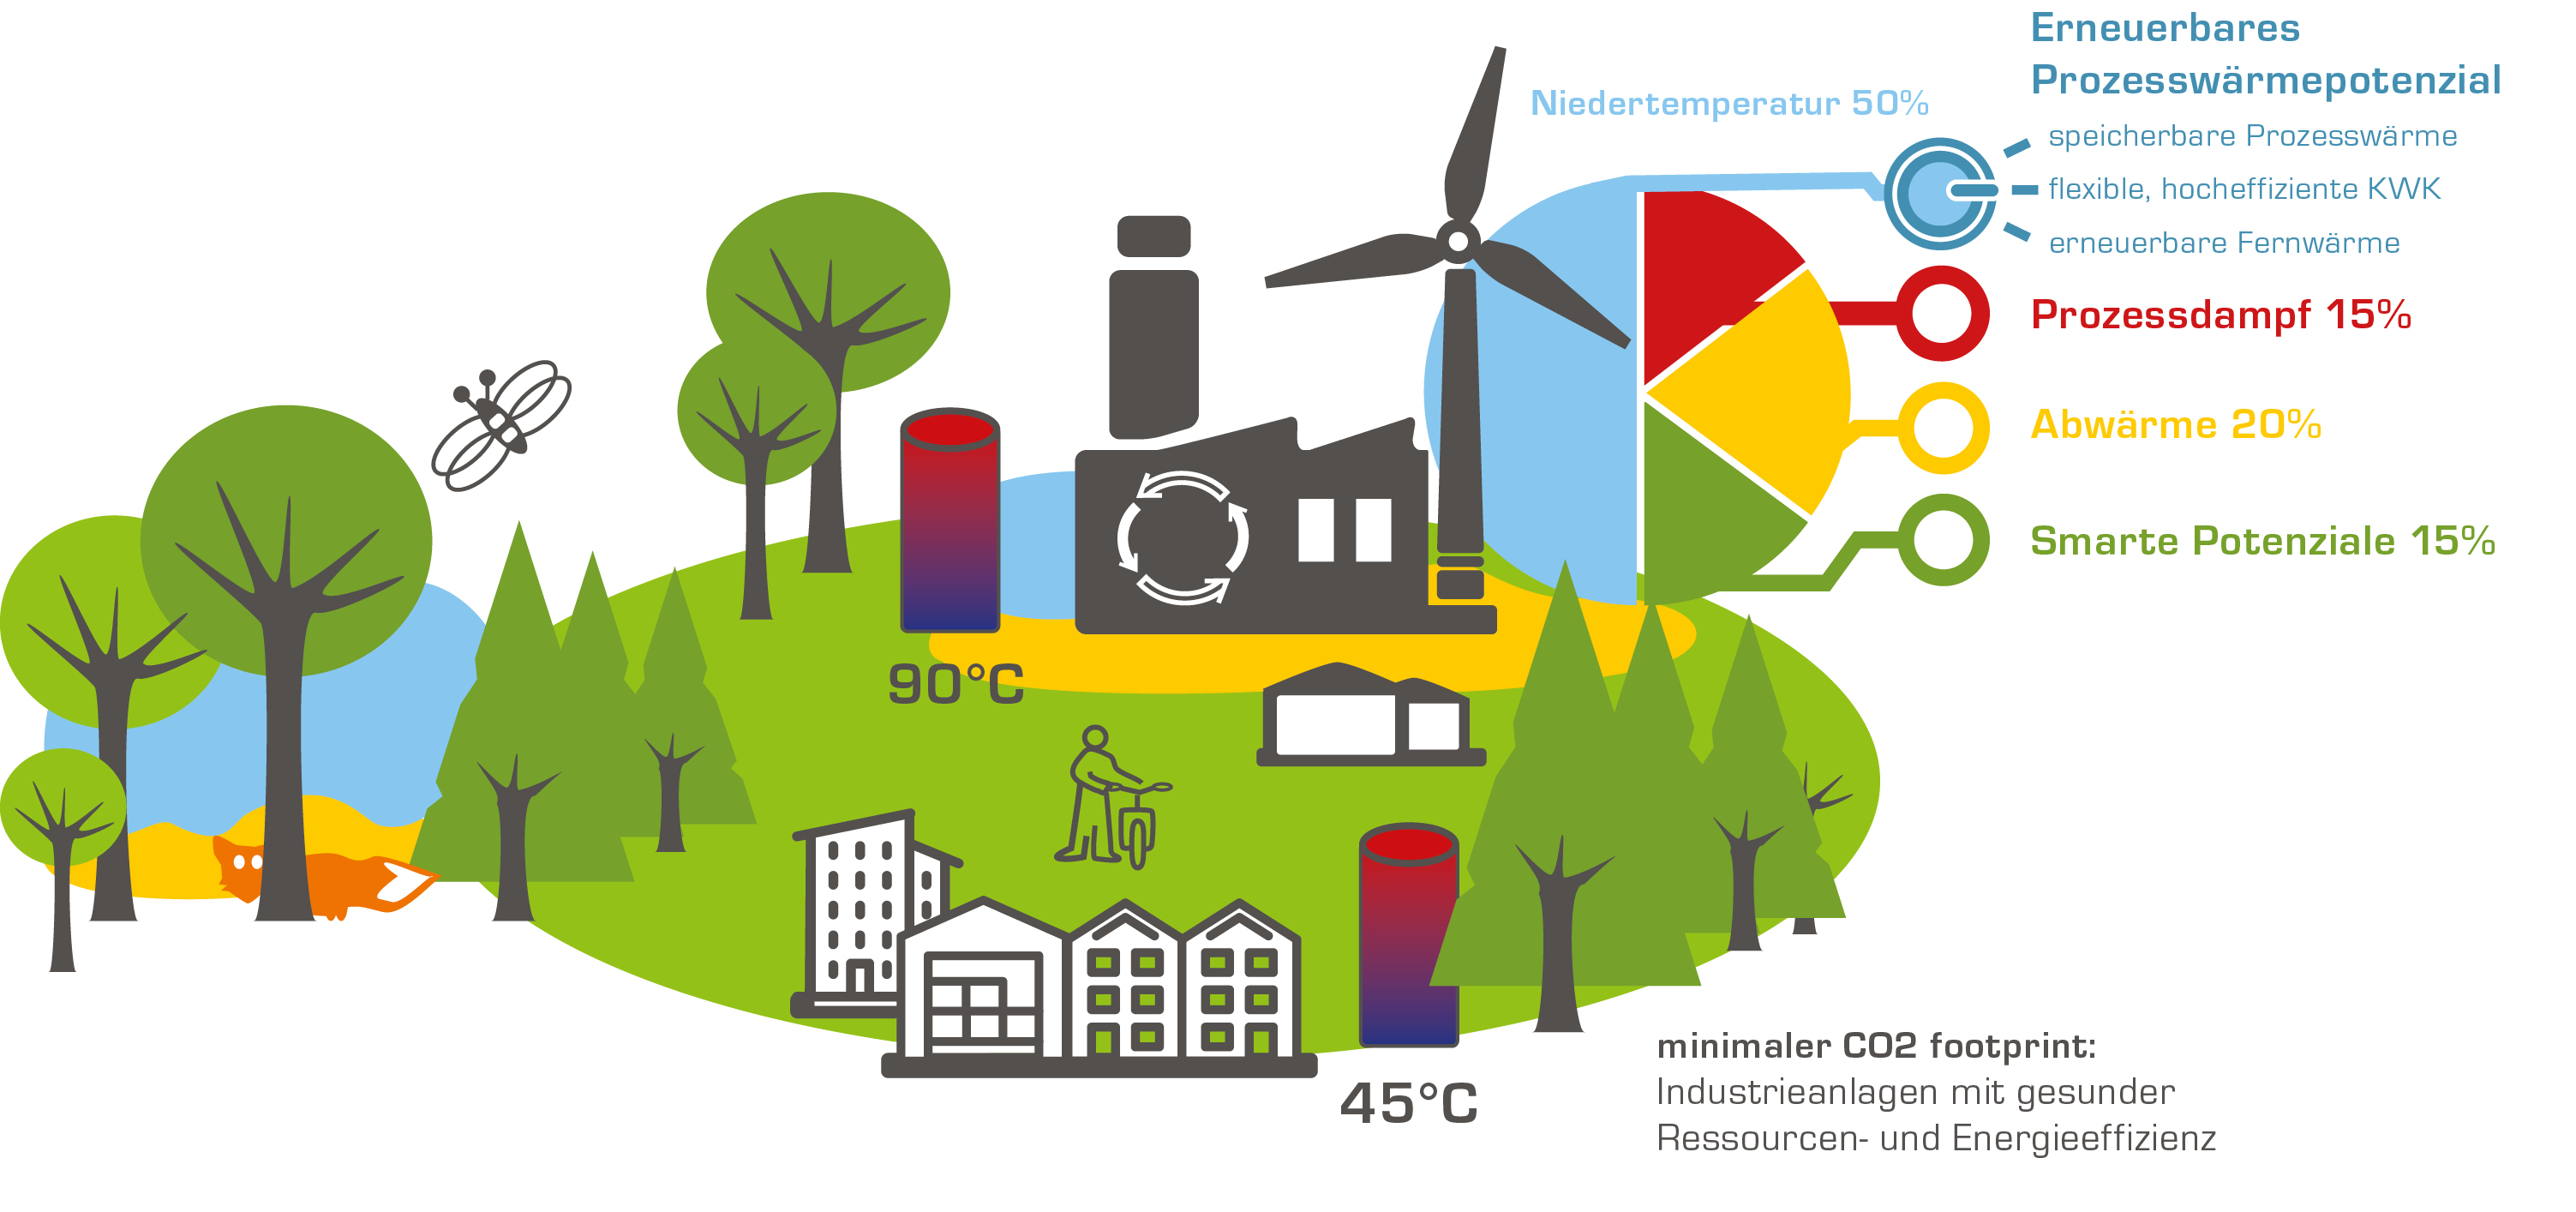 Minimaler CO2 footprint in Greenfield: Industrieanlagen mit gesunder Ressourcen- und Energieeffizienz